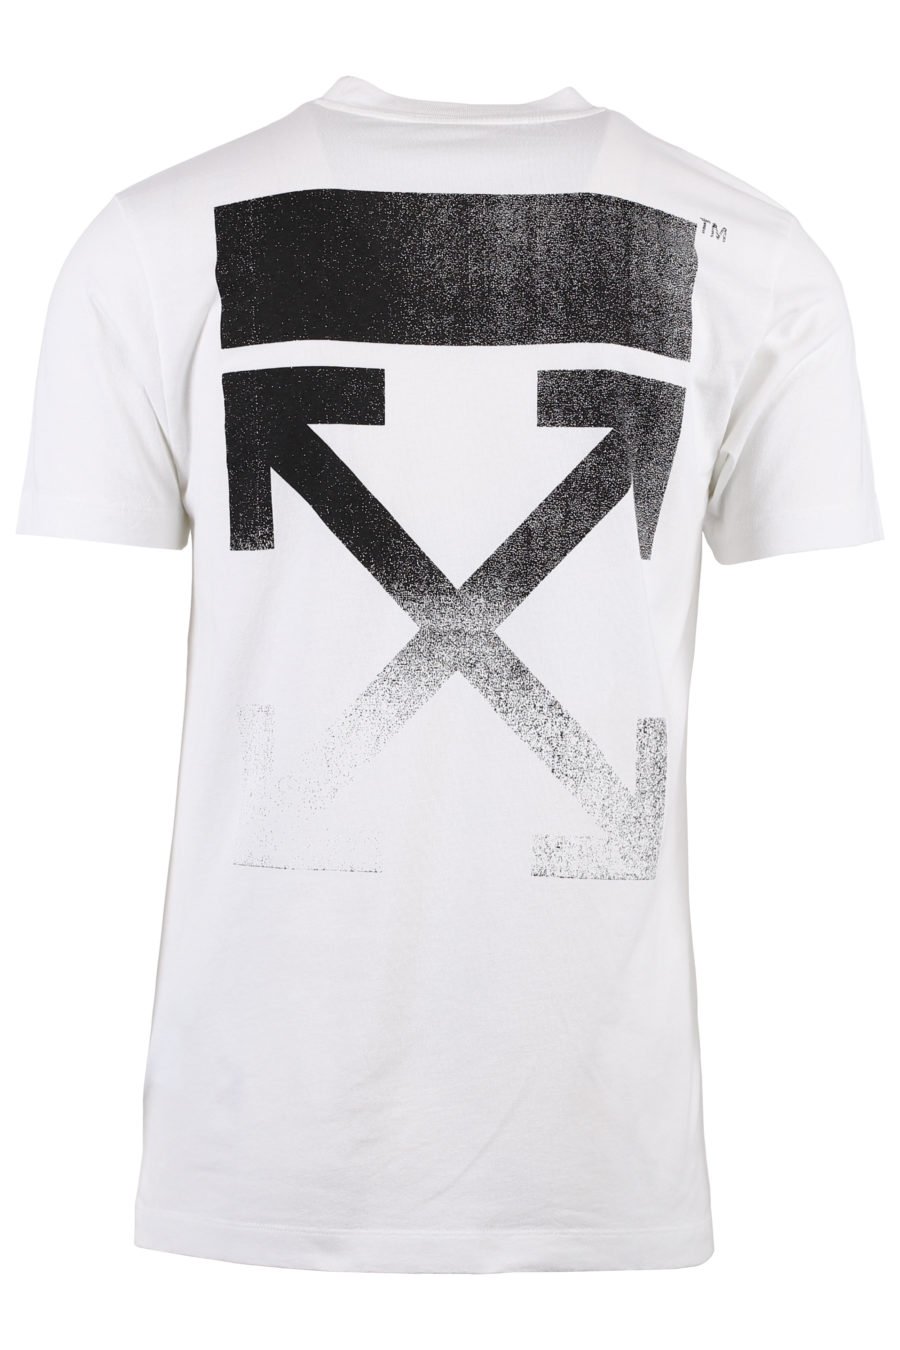 Camiseta blanca con flechas negras en degradé - IMG 1363